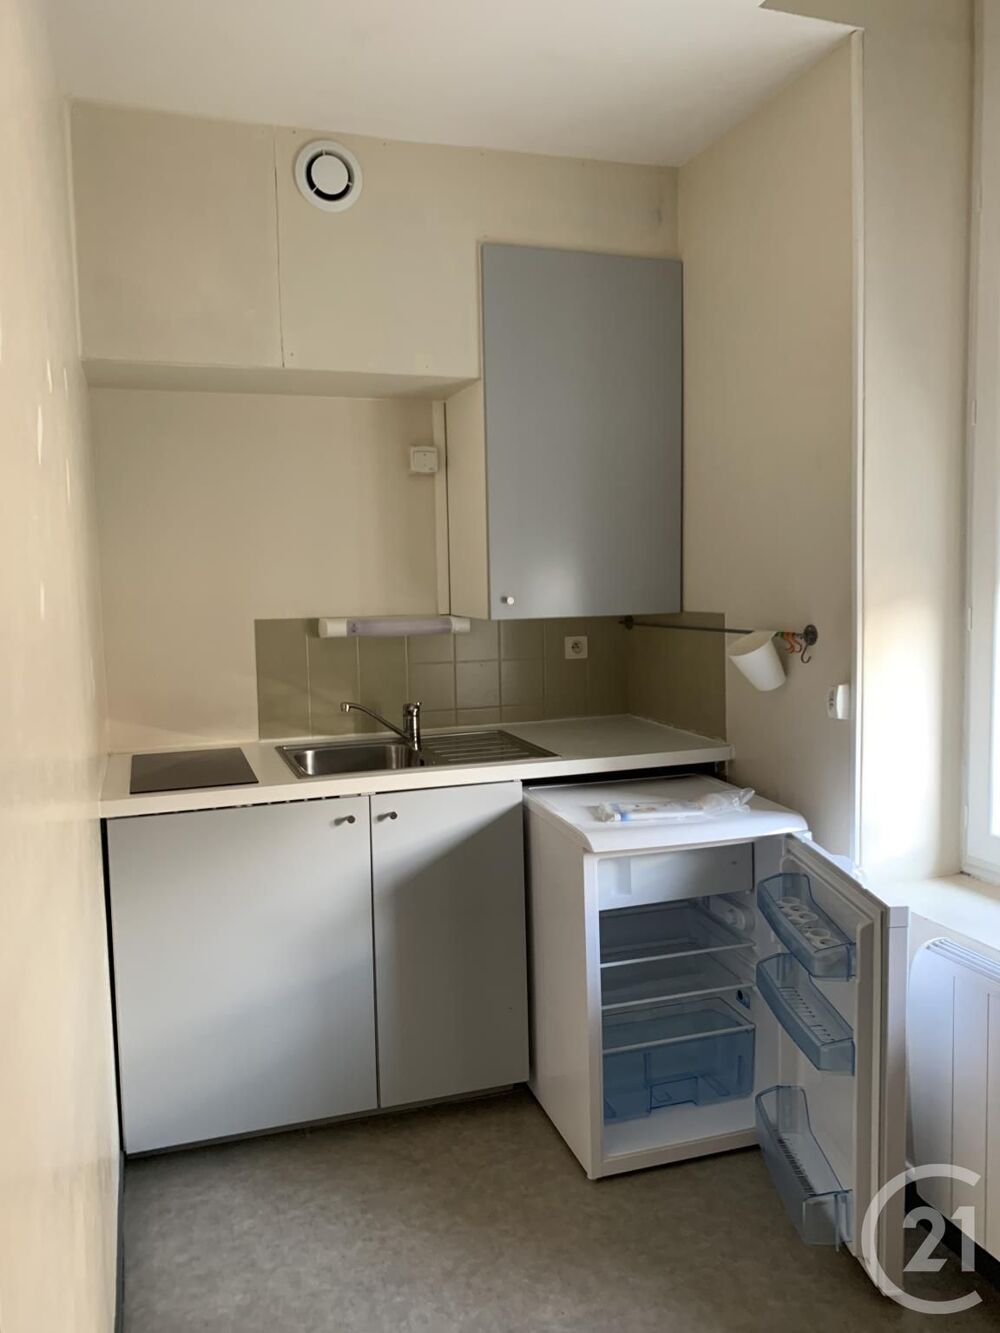 location Appartement - 1 pièce(s) - 30 m² Montluçon (03100)